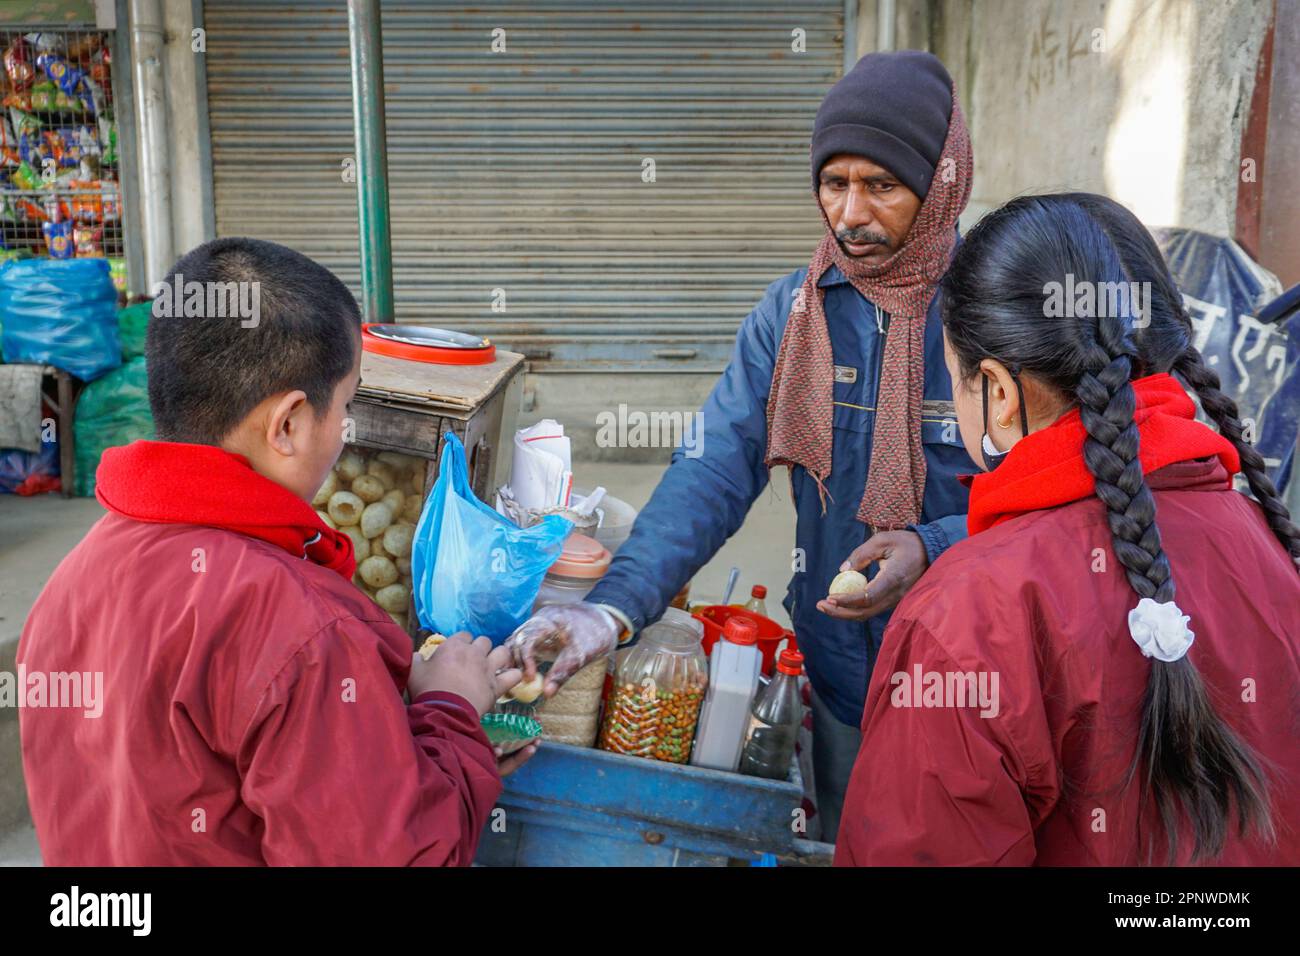 Jagar Nath Shah verkauft am 22. Dezember 2021 Pani puri, einen kugelförmigen Snack, an Schulkinder in Jana Marg, Kathmandu, Nepal. Shah, der Pani puri seit 15 Jahren in Kathmandu verkauft, musste während der Coronavirus-Pandemie vorübergehend seinen Betrieb schließen und in sein Dorf umziehen, um dort zu züchten. (Shilu Manandhar/Global Press Journal) Stockfoto